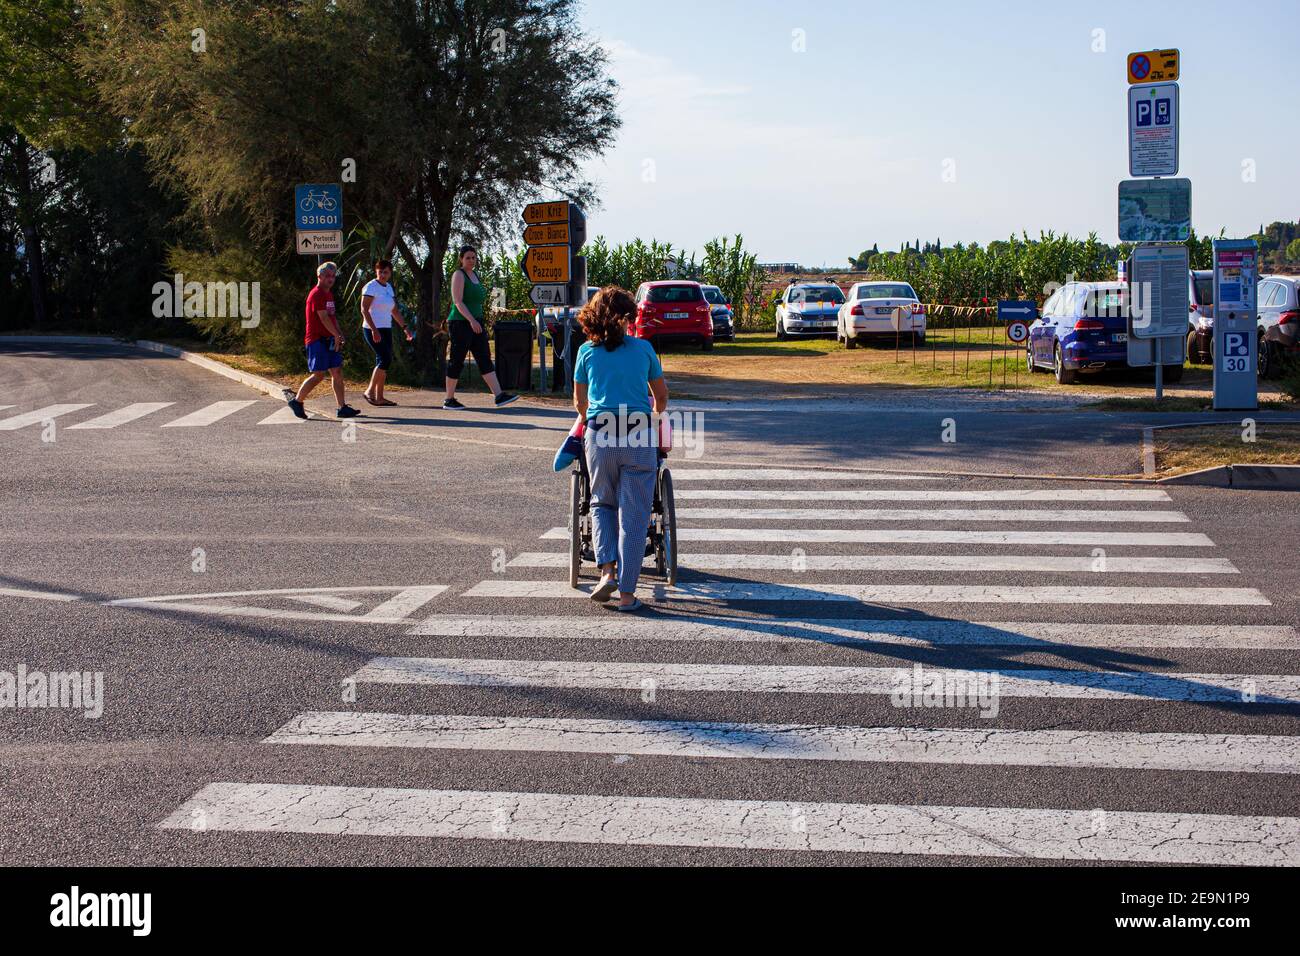 Strunian, Slowenien - September, 19: Assistentin, die am 19. September 2020 behinderten Menschen im Rollstuhl beim Überqueren des Zebrakreuzes hilft Stockfoto